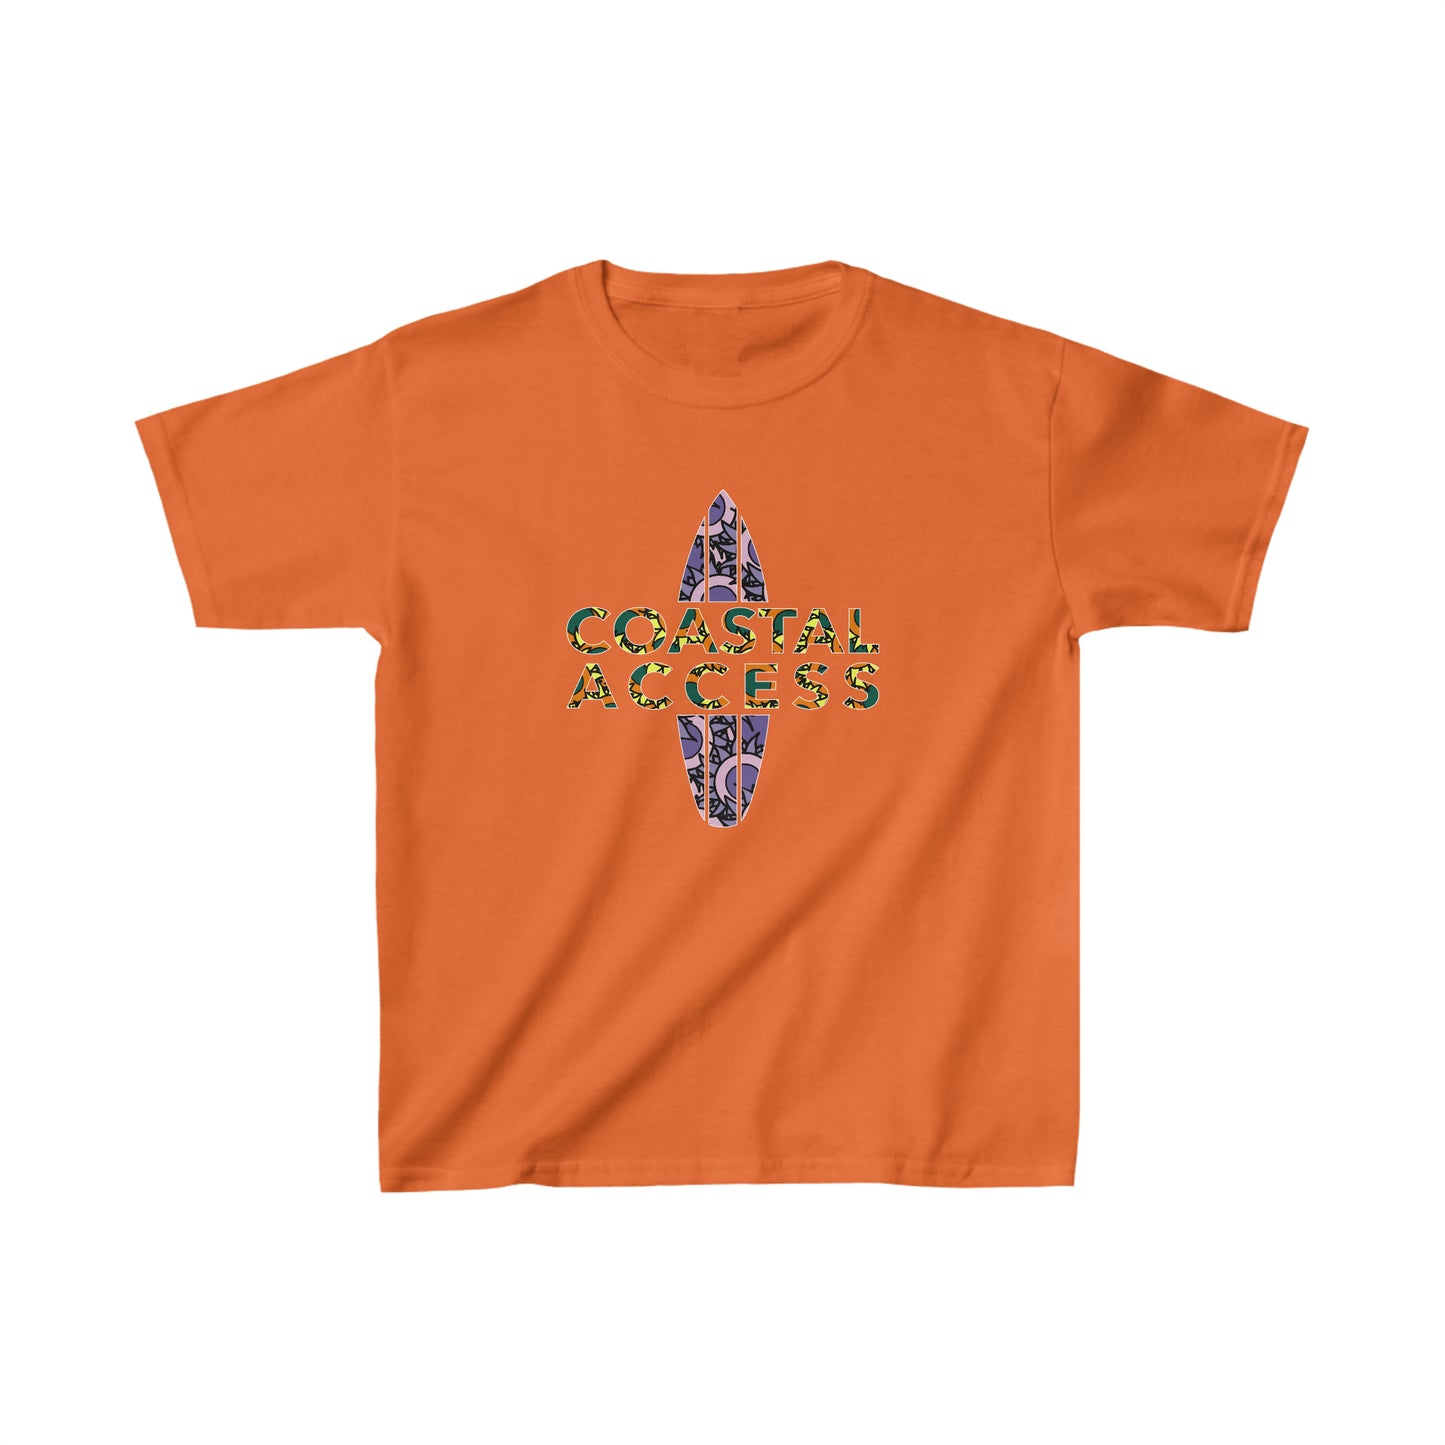 Coastal Access Kid's T-shirt (6 Colors)